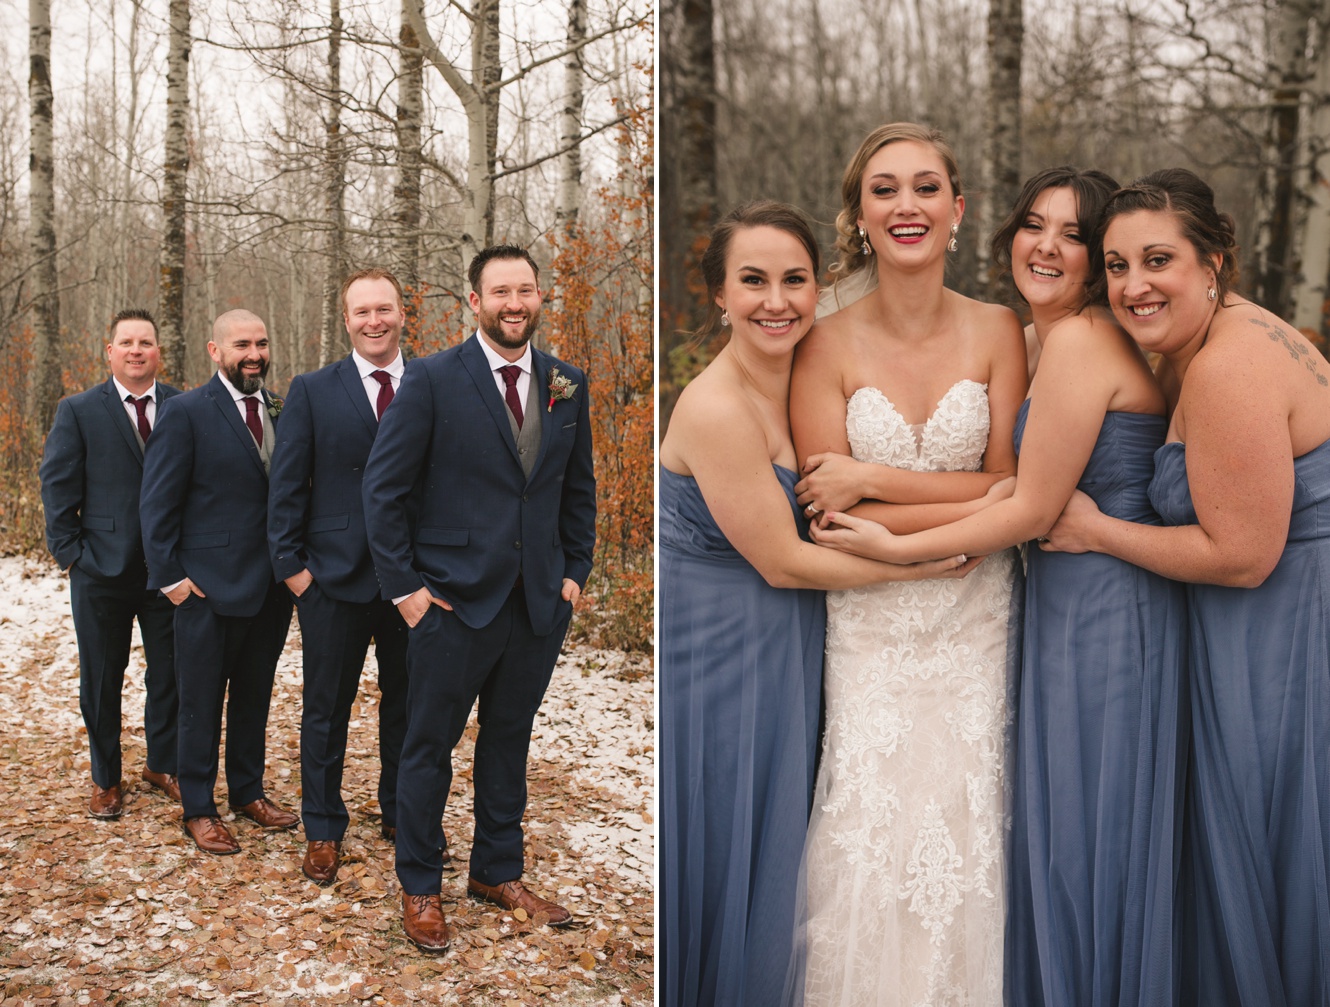 Dusty blue wedding photo